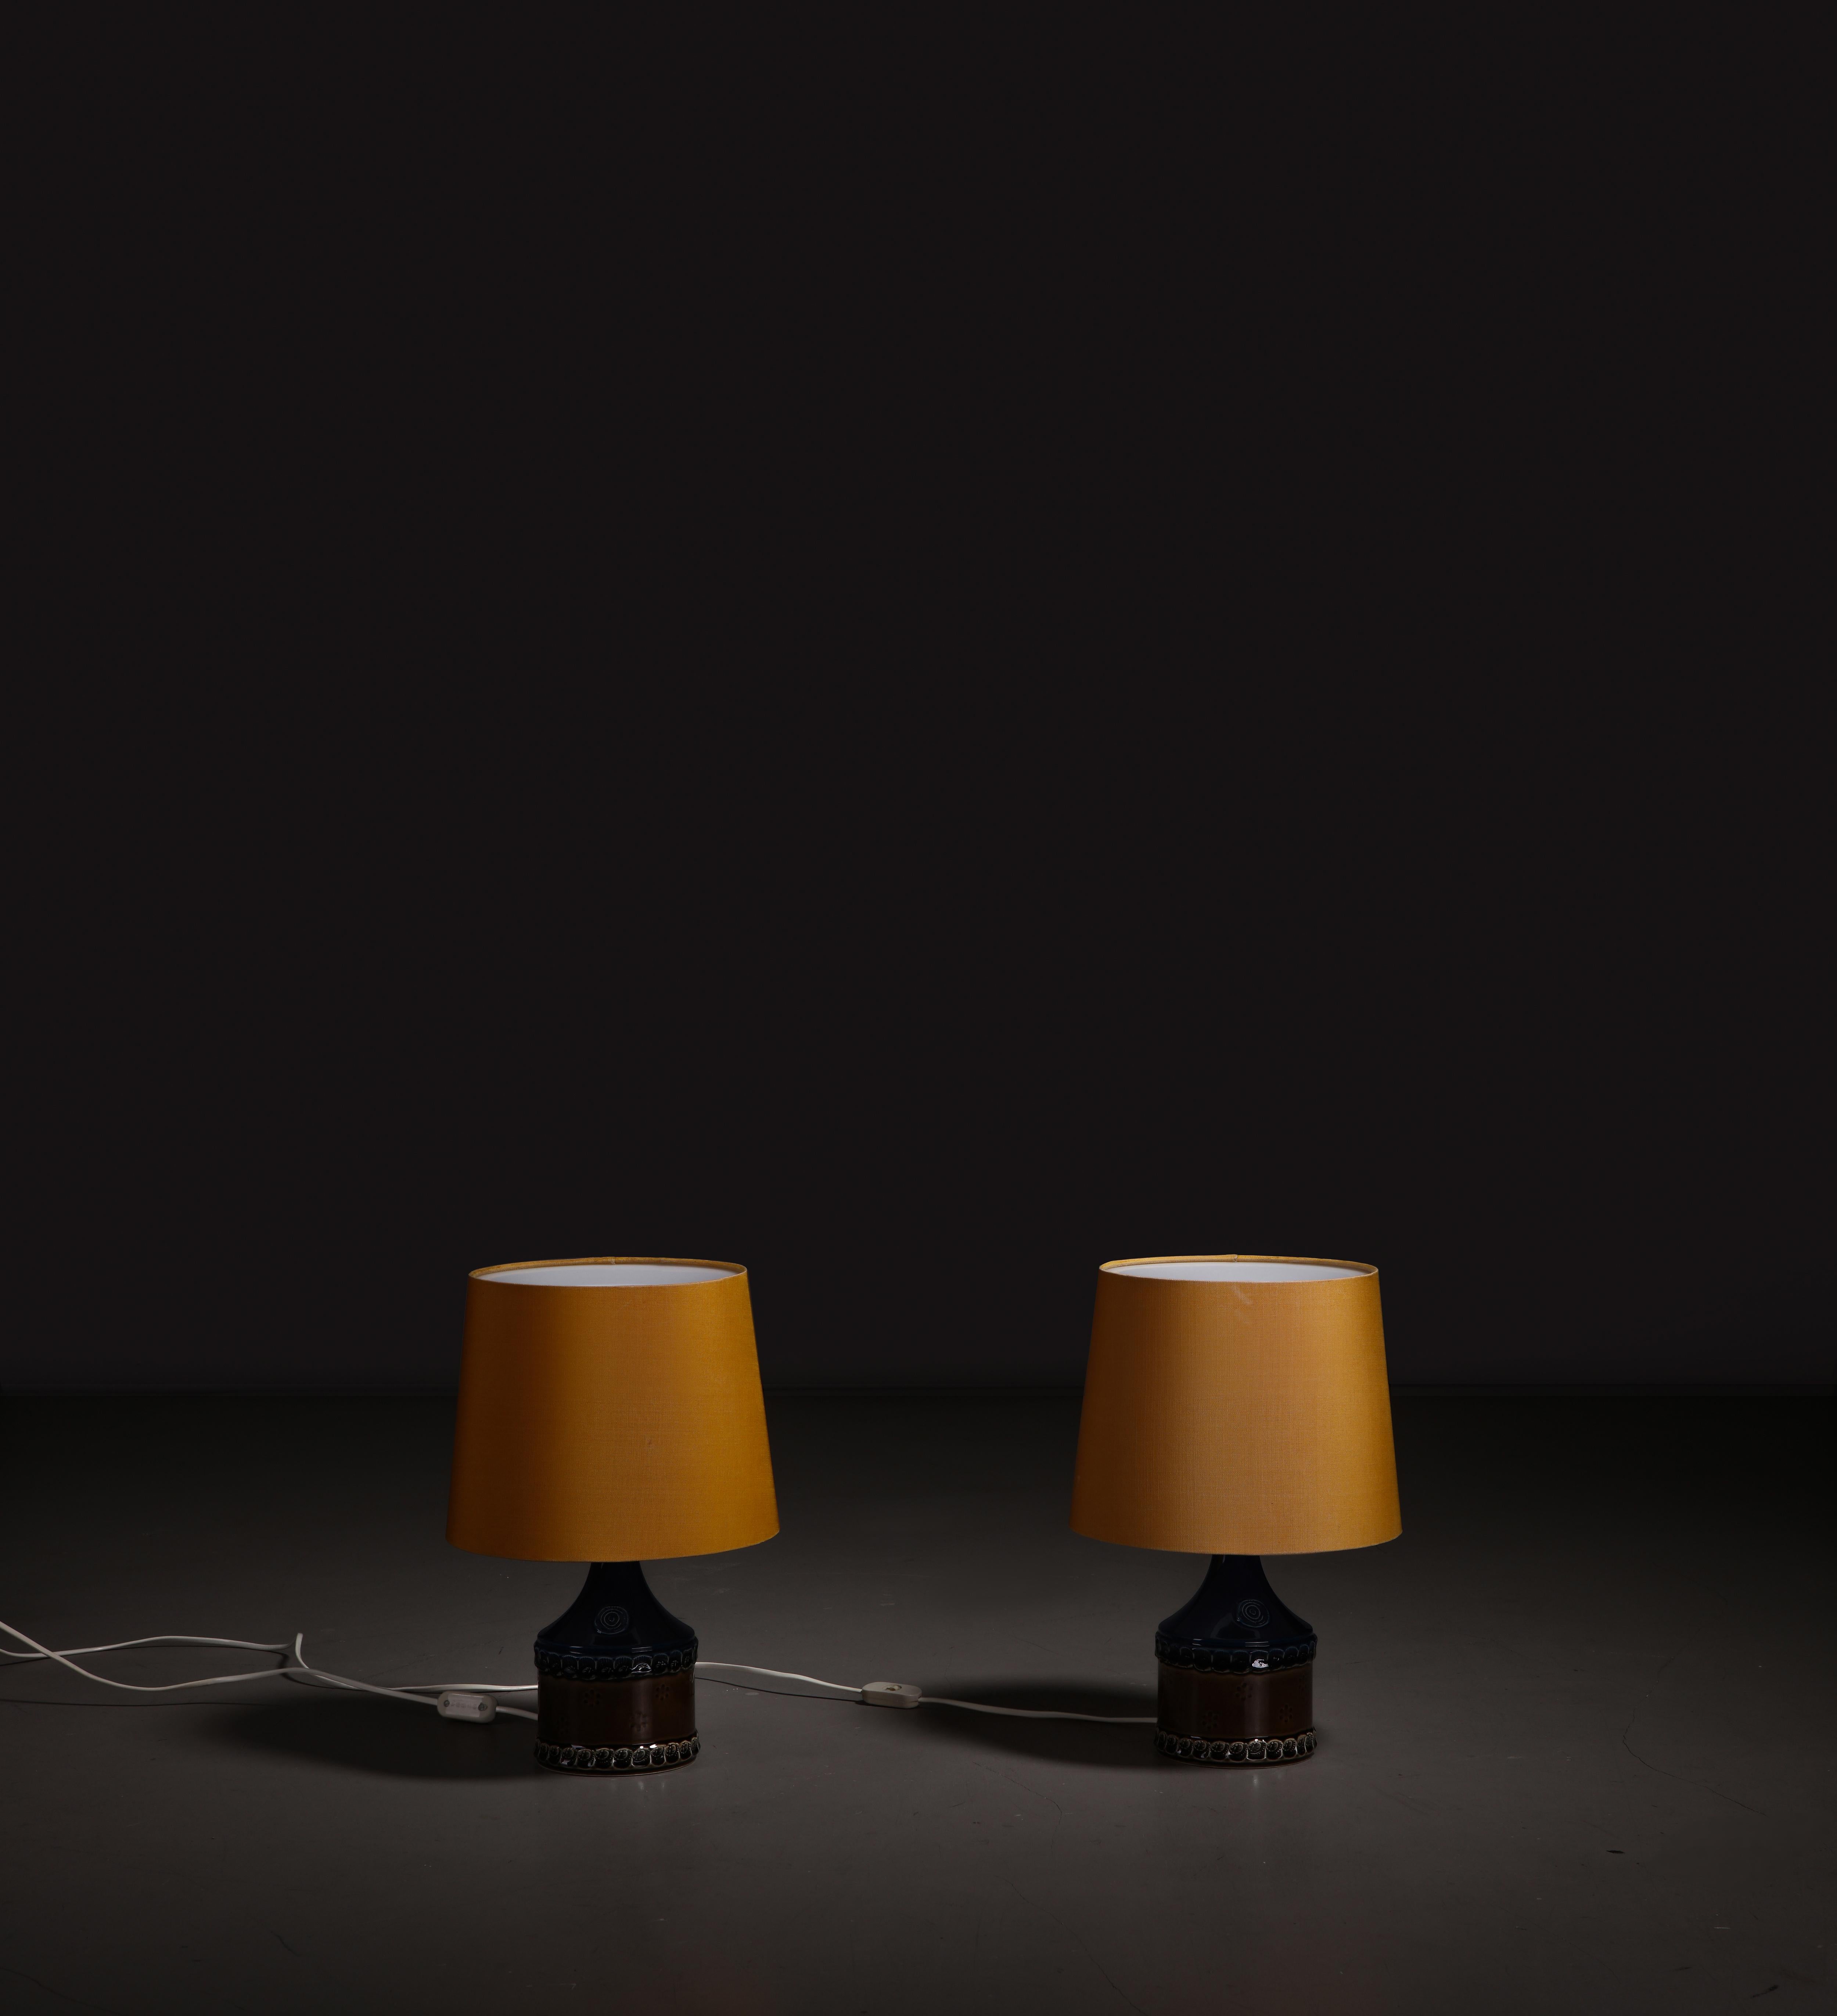 Paire de lampes de table en porcelaine conçues par Bjørn Wiinblad et fabriquées par Rosenthal, Allemagne, années 1960.

Cette paire de rares lampes de table en porcelaine est un véritable témoignage de l'élégance intemporelle du design du milieu du